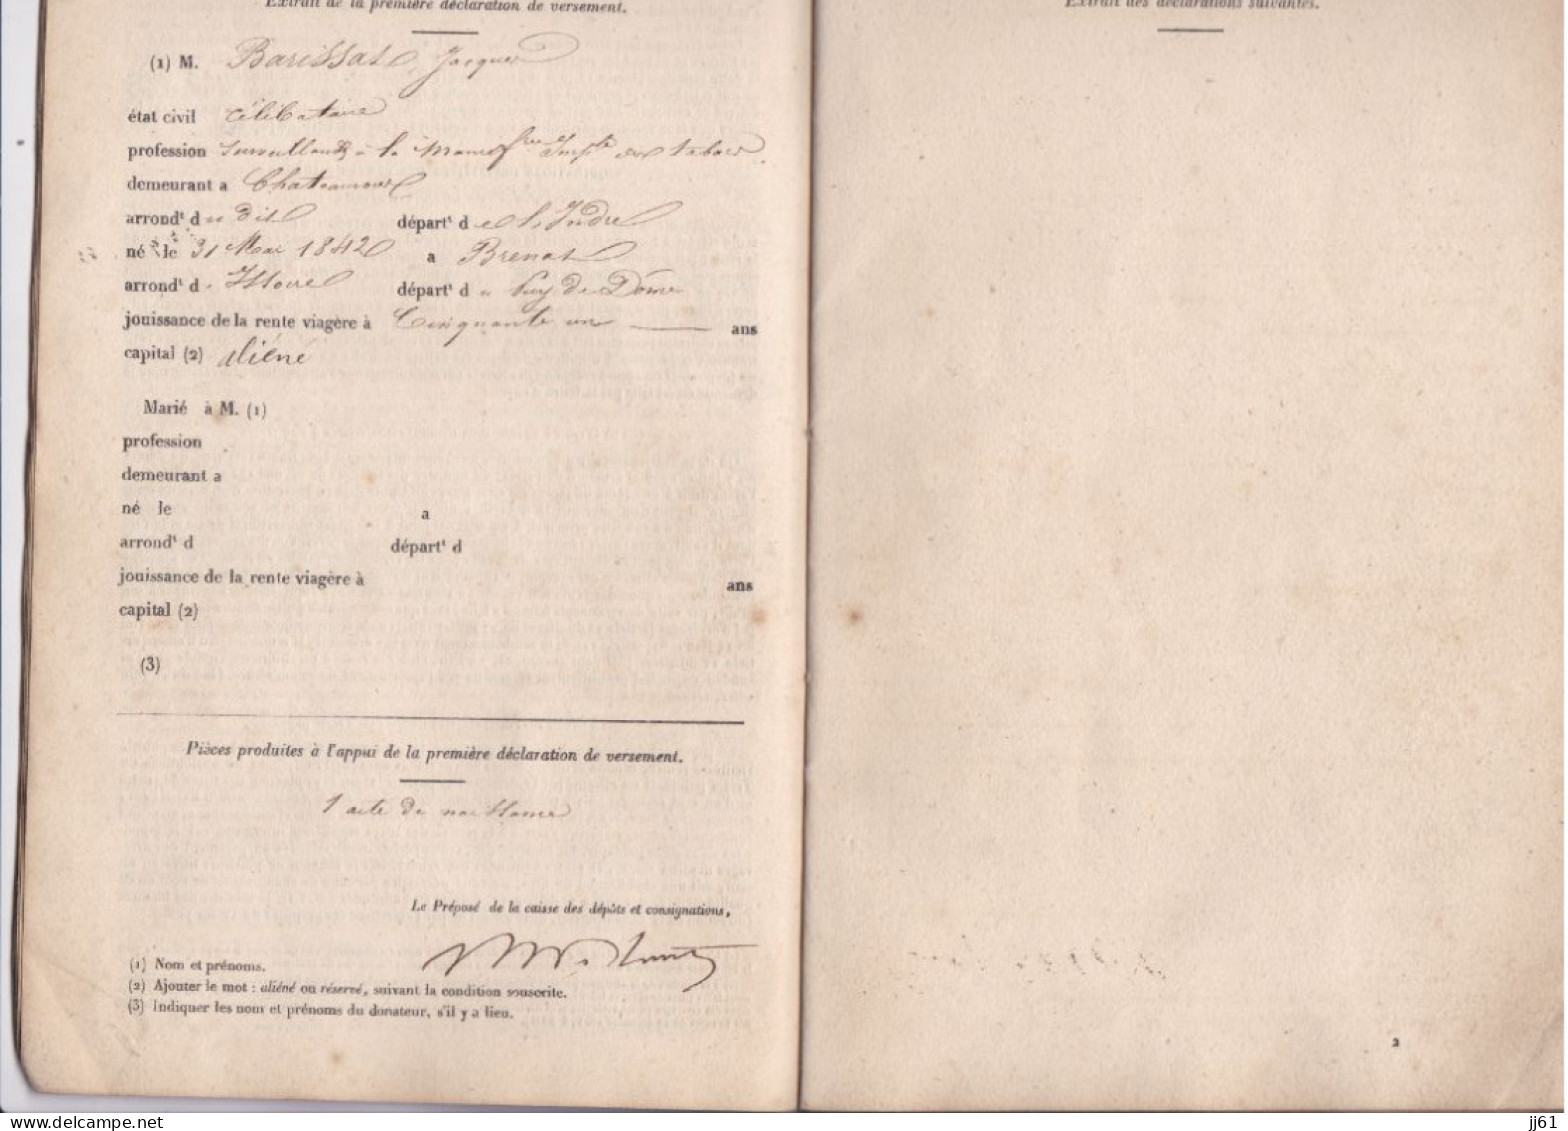 CHATEAUROUX ANCIEN LIVRET DE LA CAISSE DE RETRAITE VIEILLESSE ANNEE 1842 A M BARISSAT JACQUES A BRENAT PUY DE DOME - Banque & Assurance